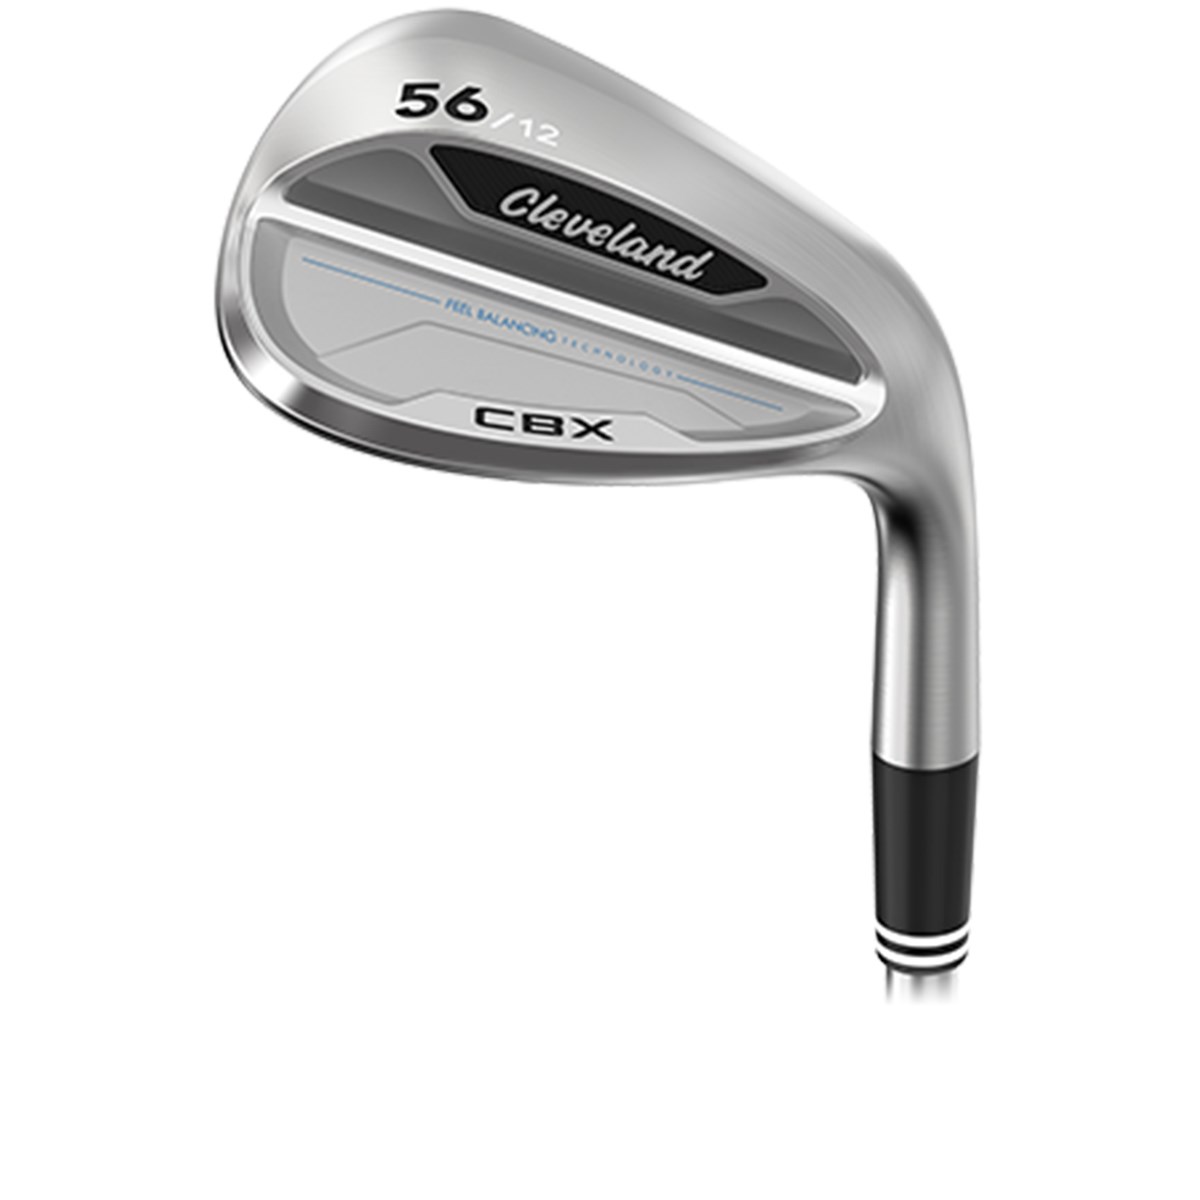 クリーブランド(Cleveland Golf) CBX ウェッジ N.S.PRO 950GH 